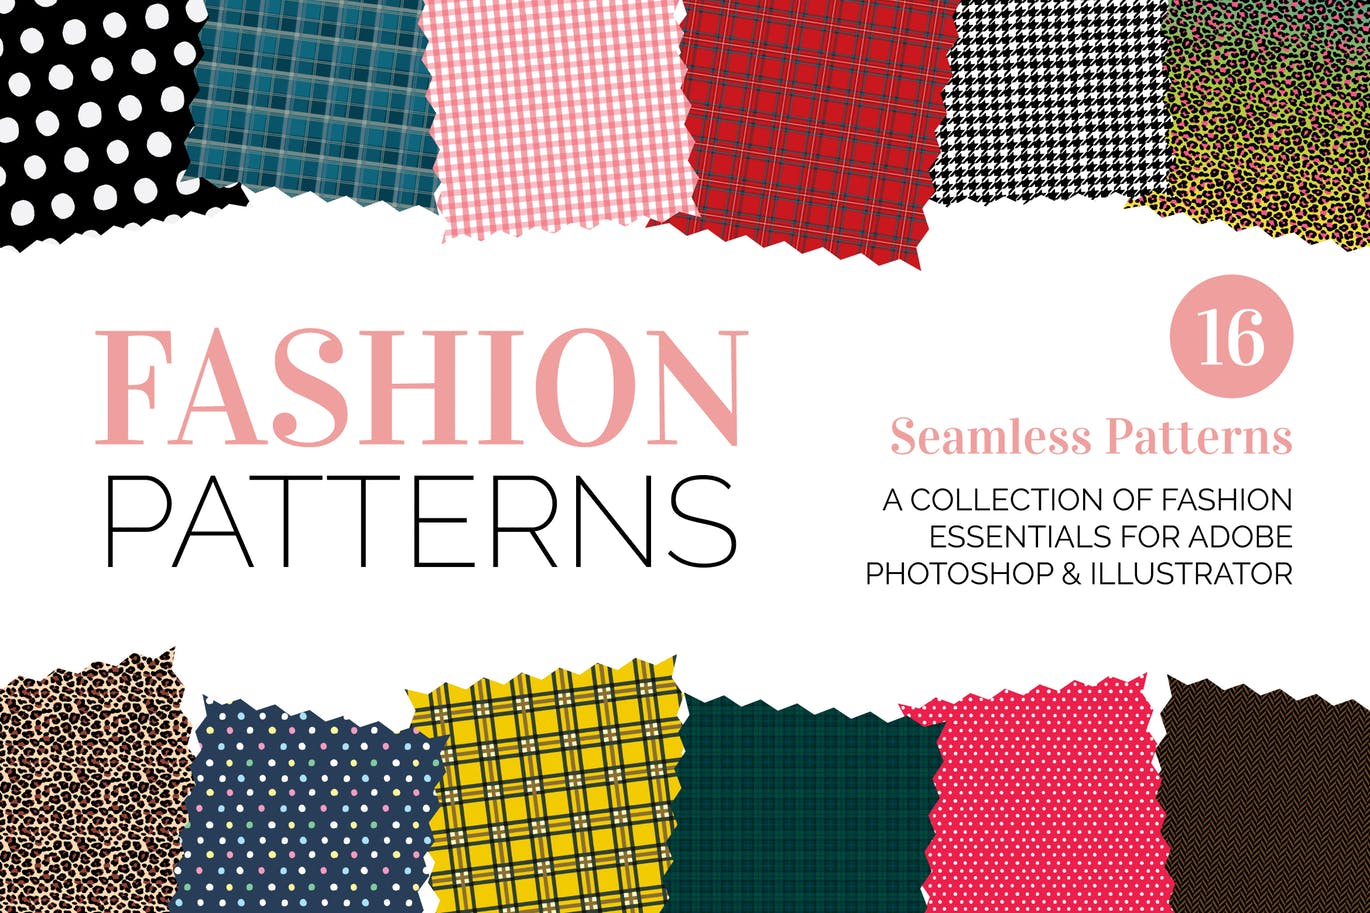 时尚元素和面料无缝图案纹样素材 Seamless Fashion and Fabric Patterns插图